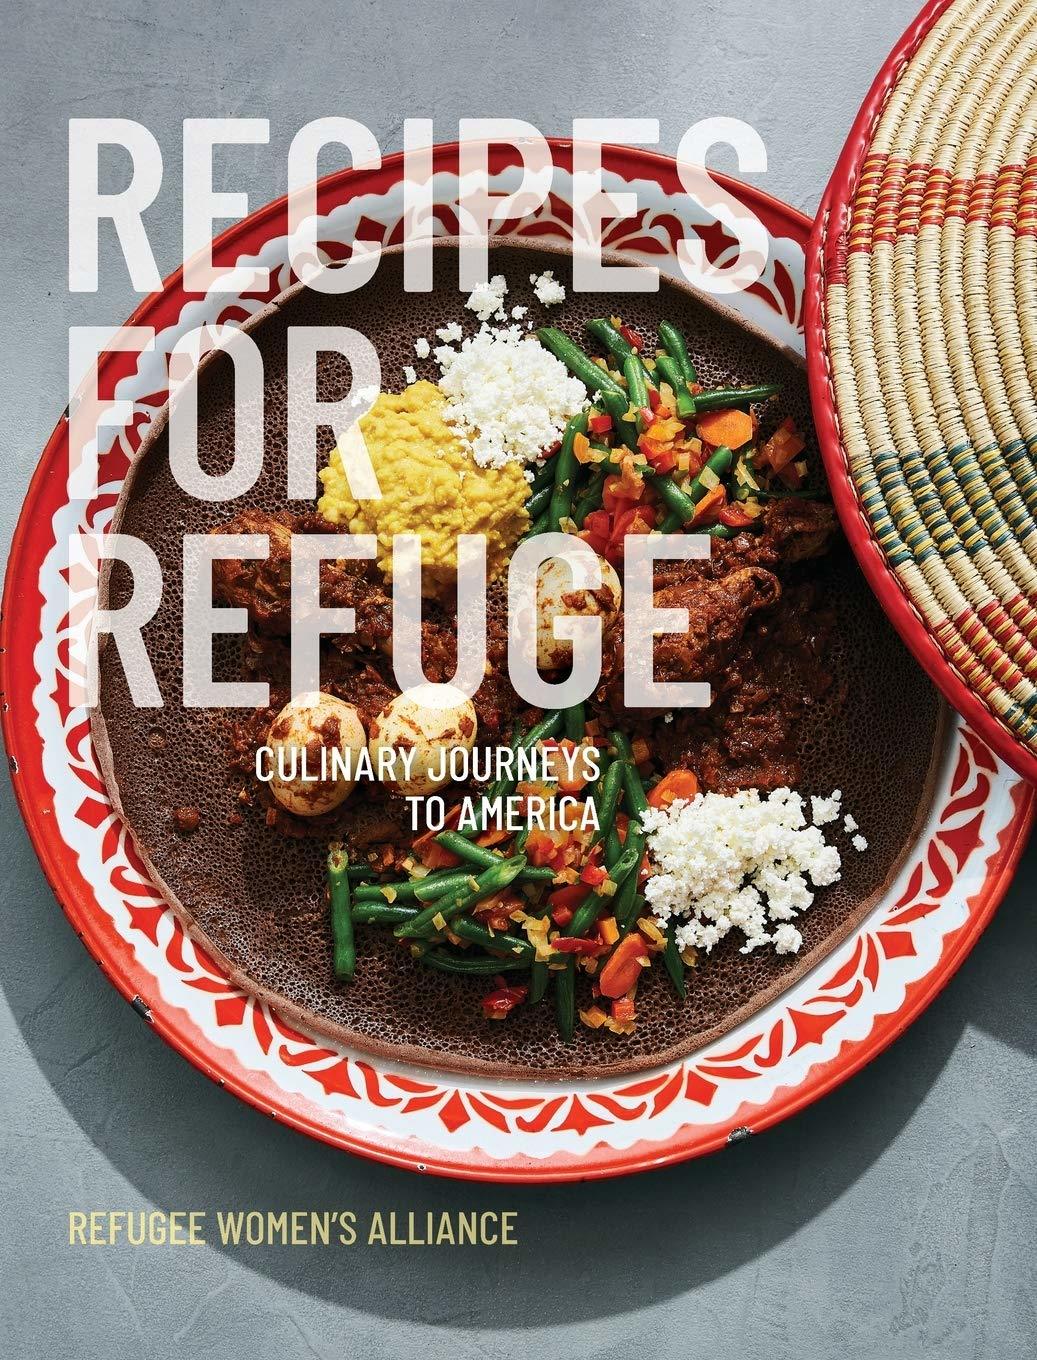 Recipes for Refuge